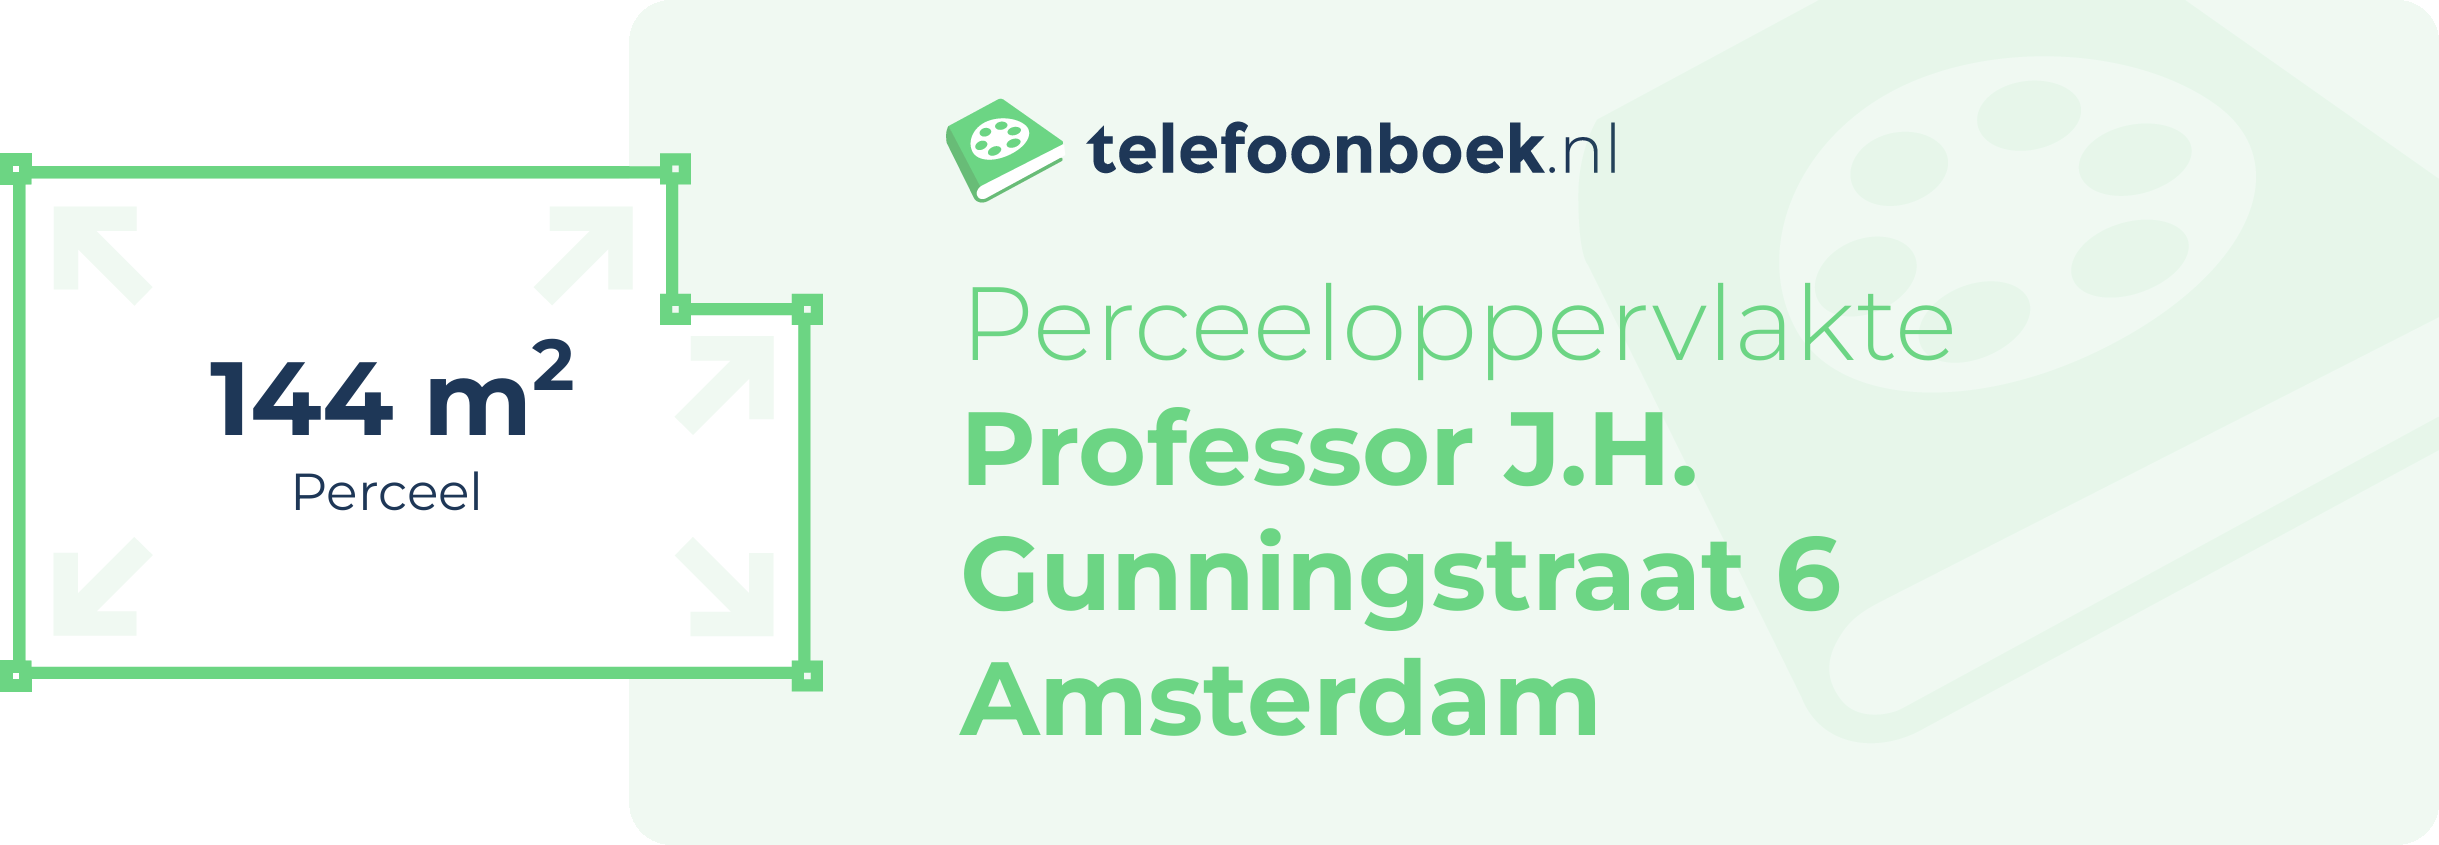 Perceeloppervlakte Professor J.H. Gunningstraat 6 Amsterdam